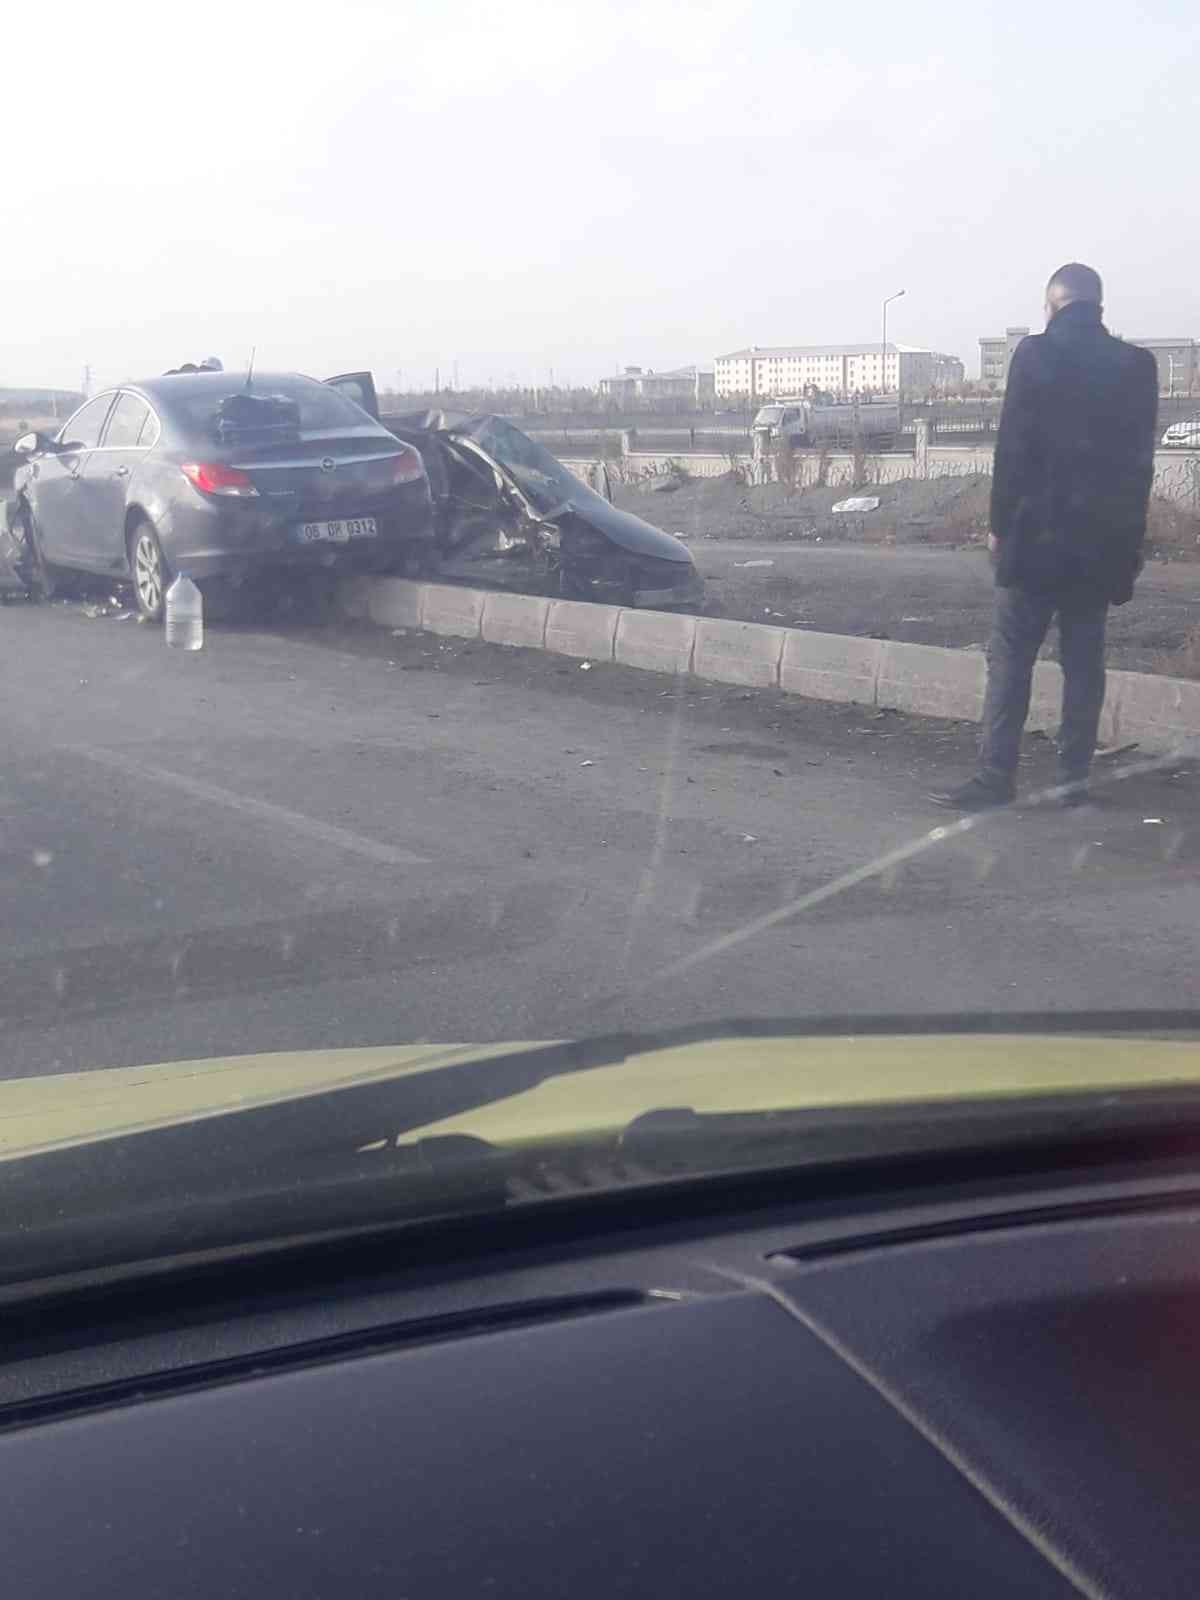 Ağrı’da korkunç kaza: 4 yaralı #agri